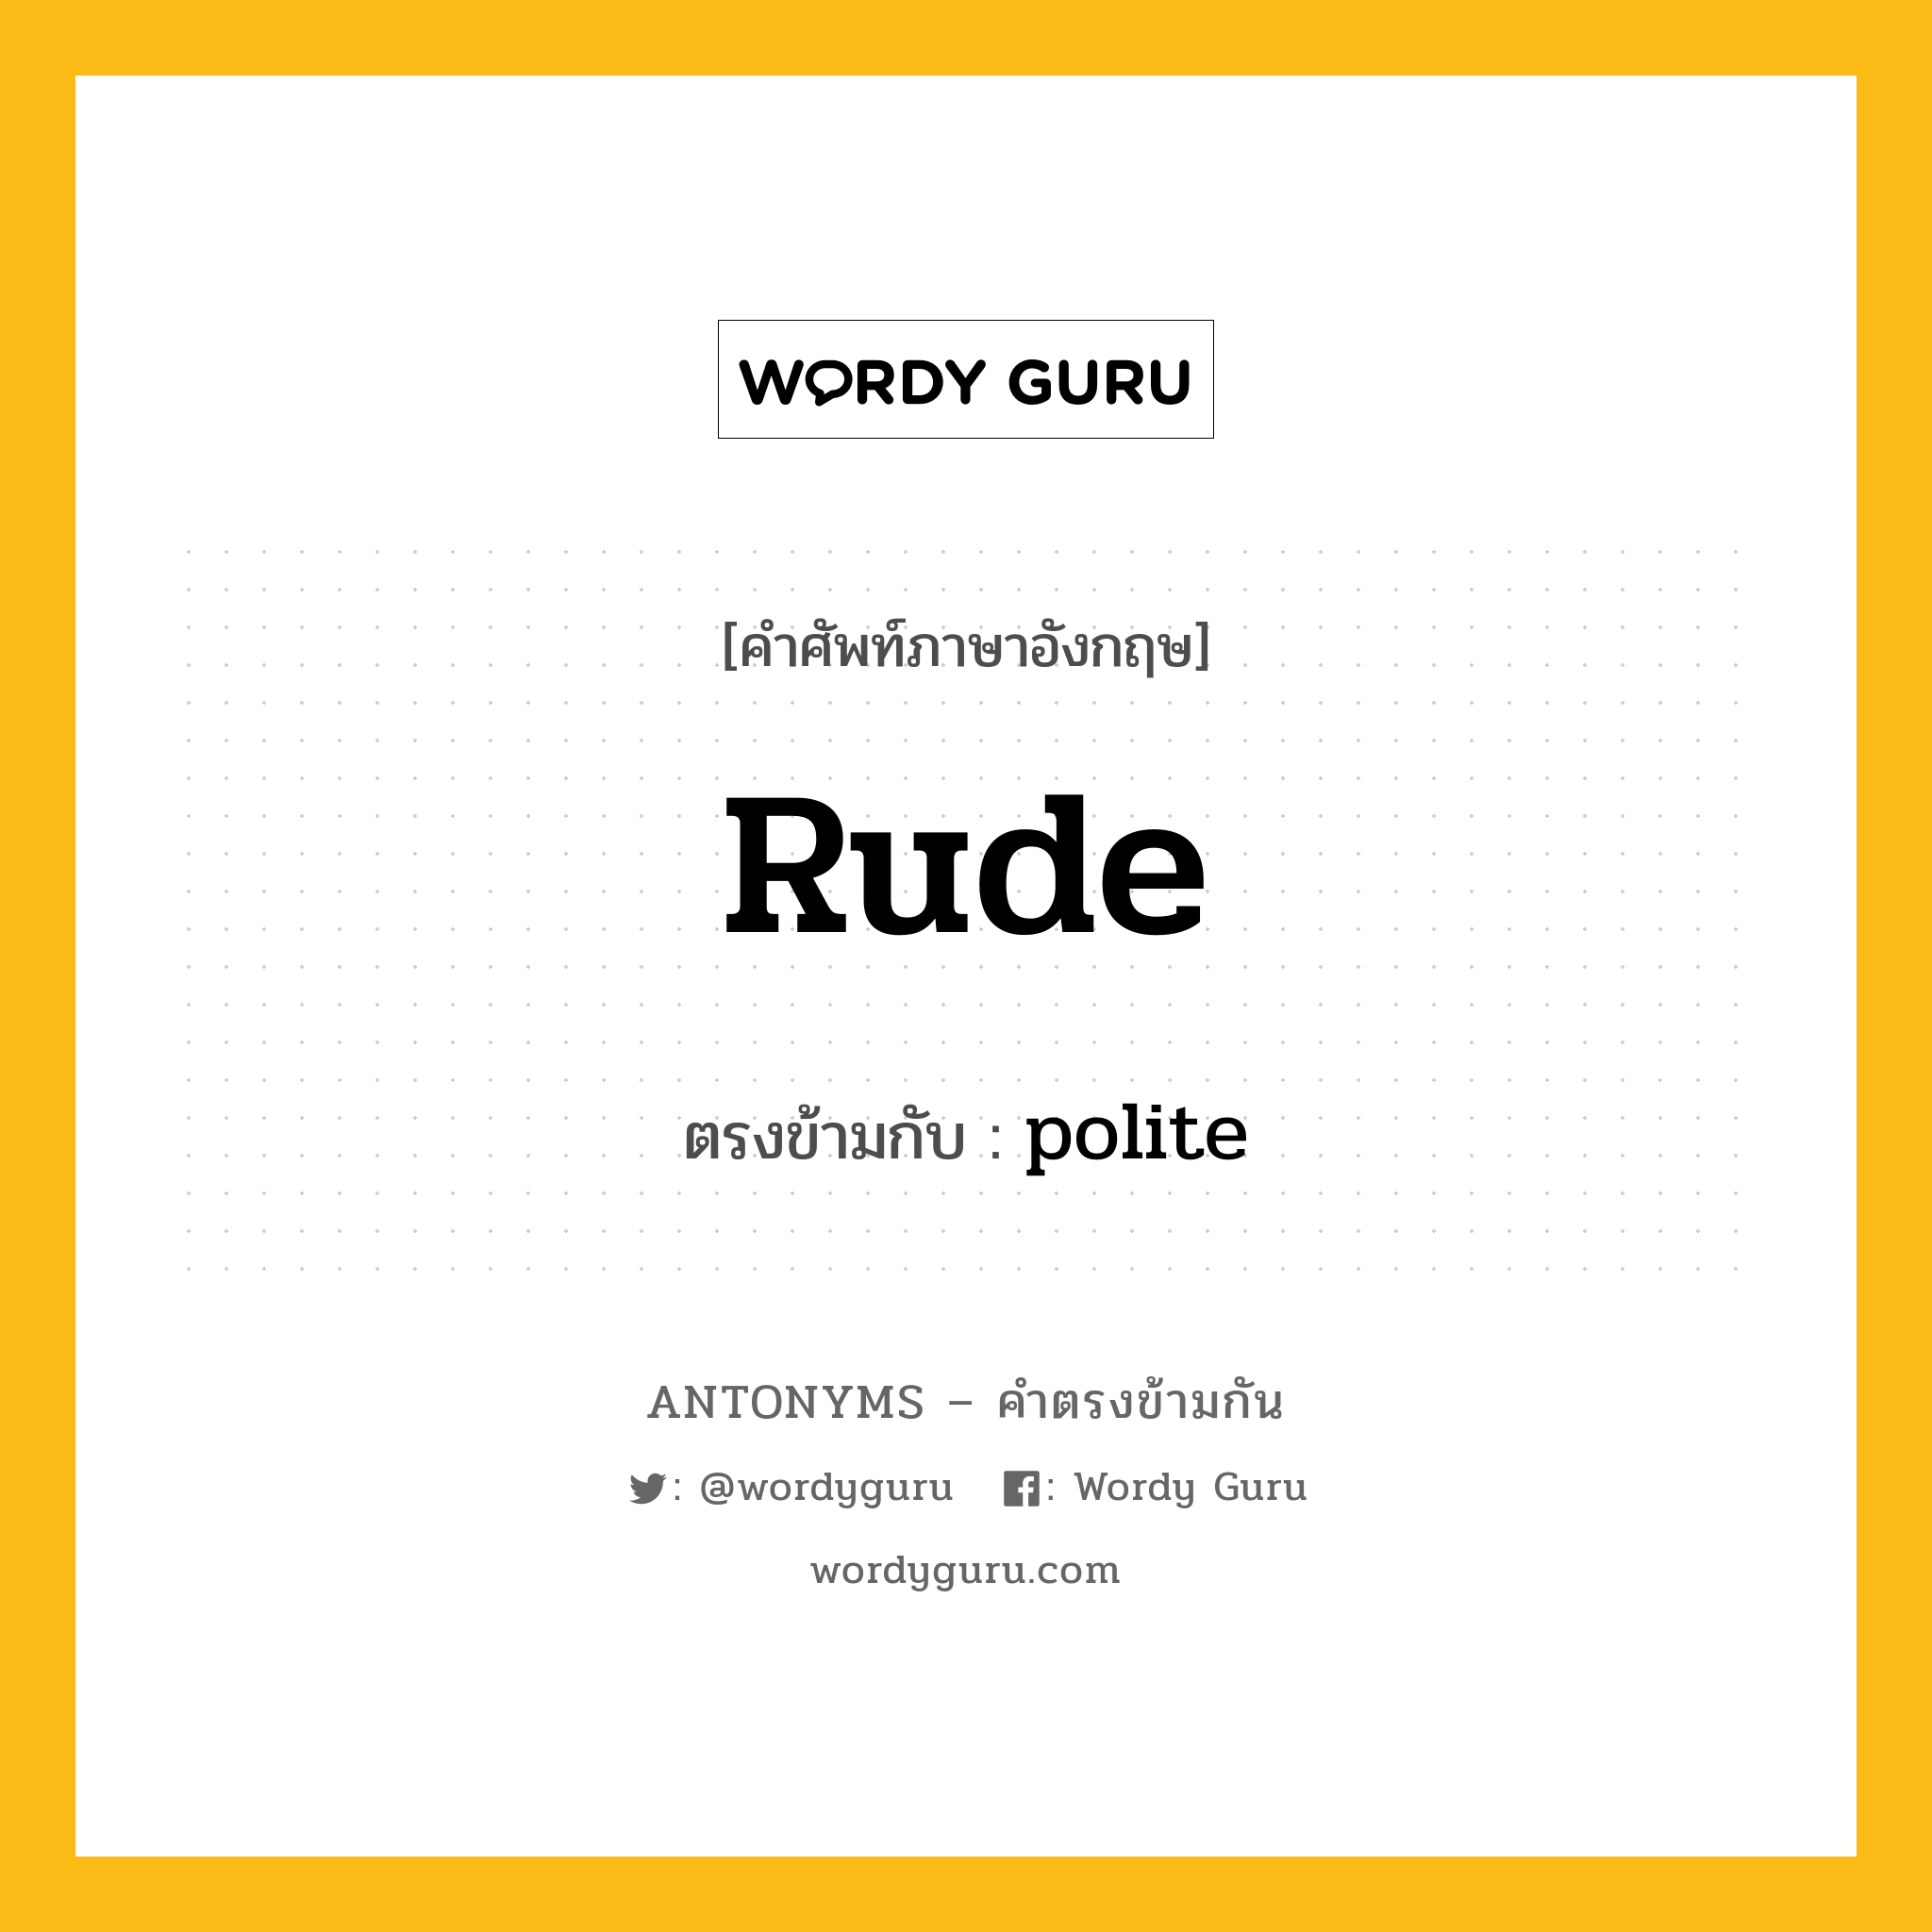 rude เป็นคำตรงข้ามกับคำไหนบ้าง?, คำศัพท์ภาษาอังกฤษ rude ตรงข้ามกับ polite หมวด polite